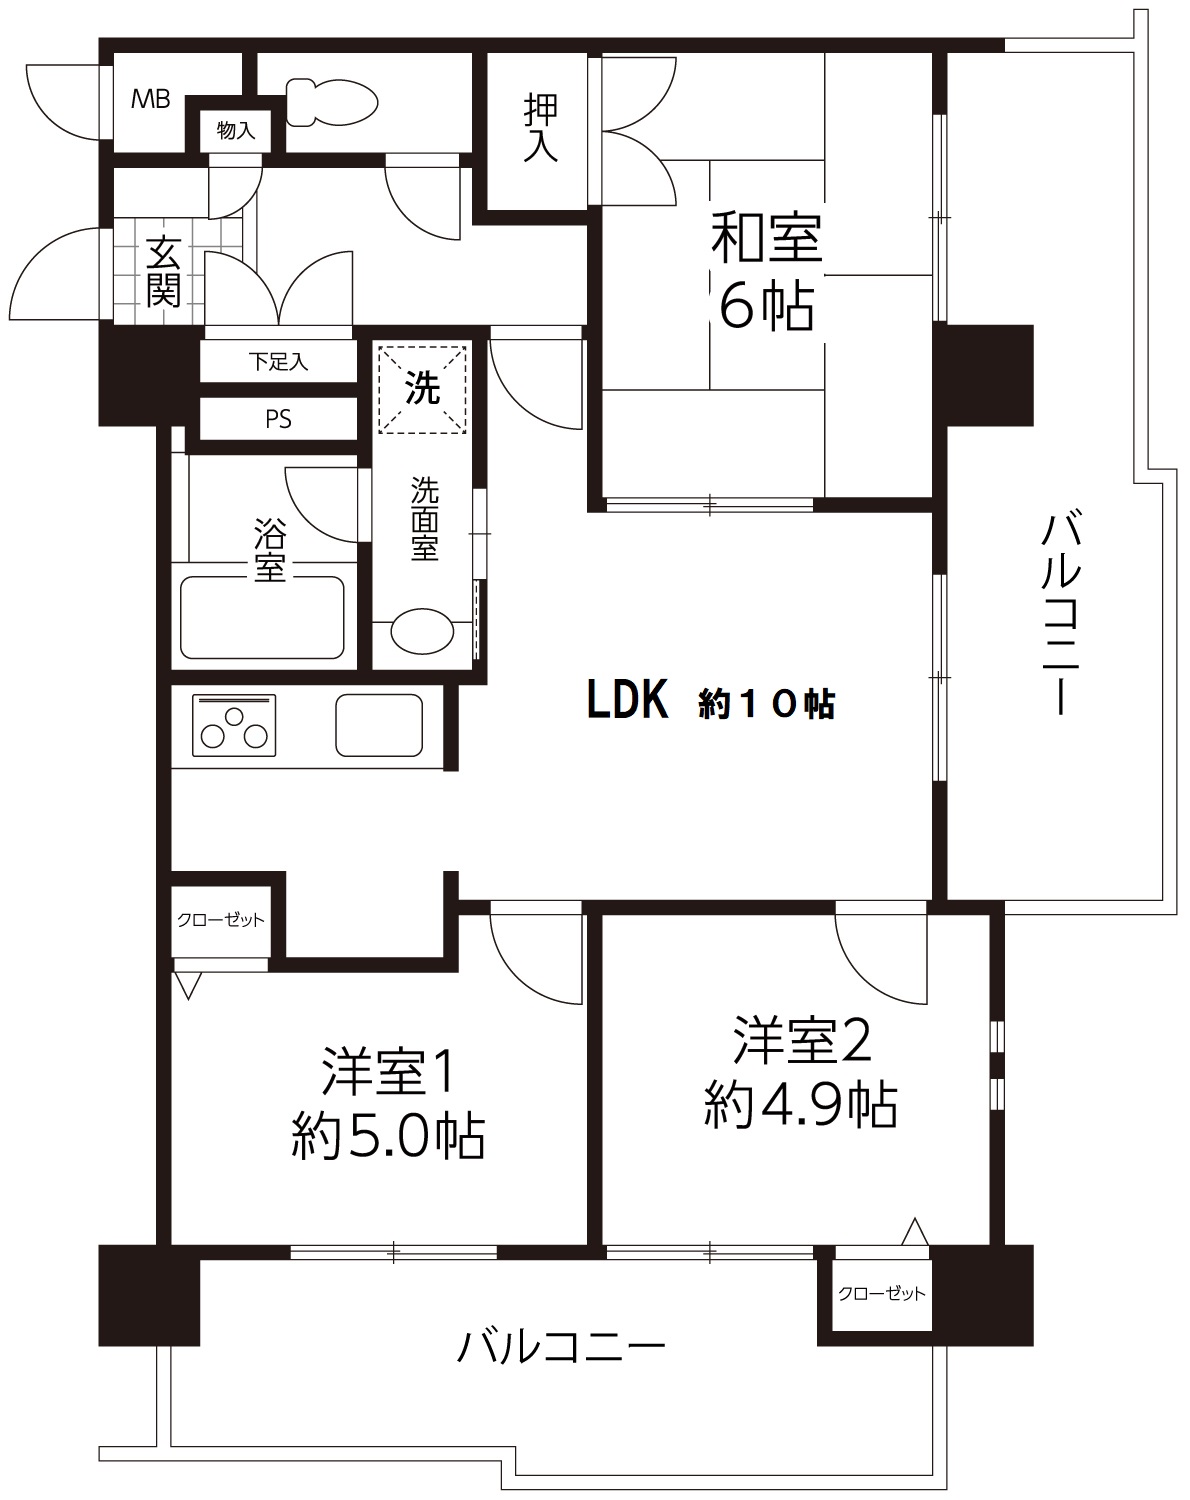 大阪市西成区で中古マンションを受託しました。